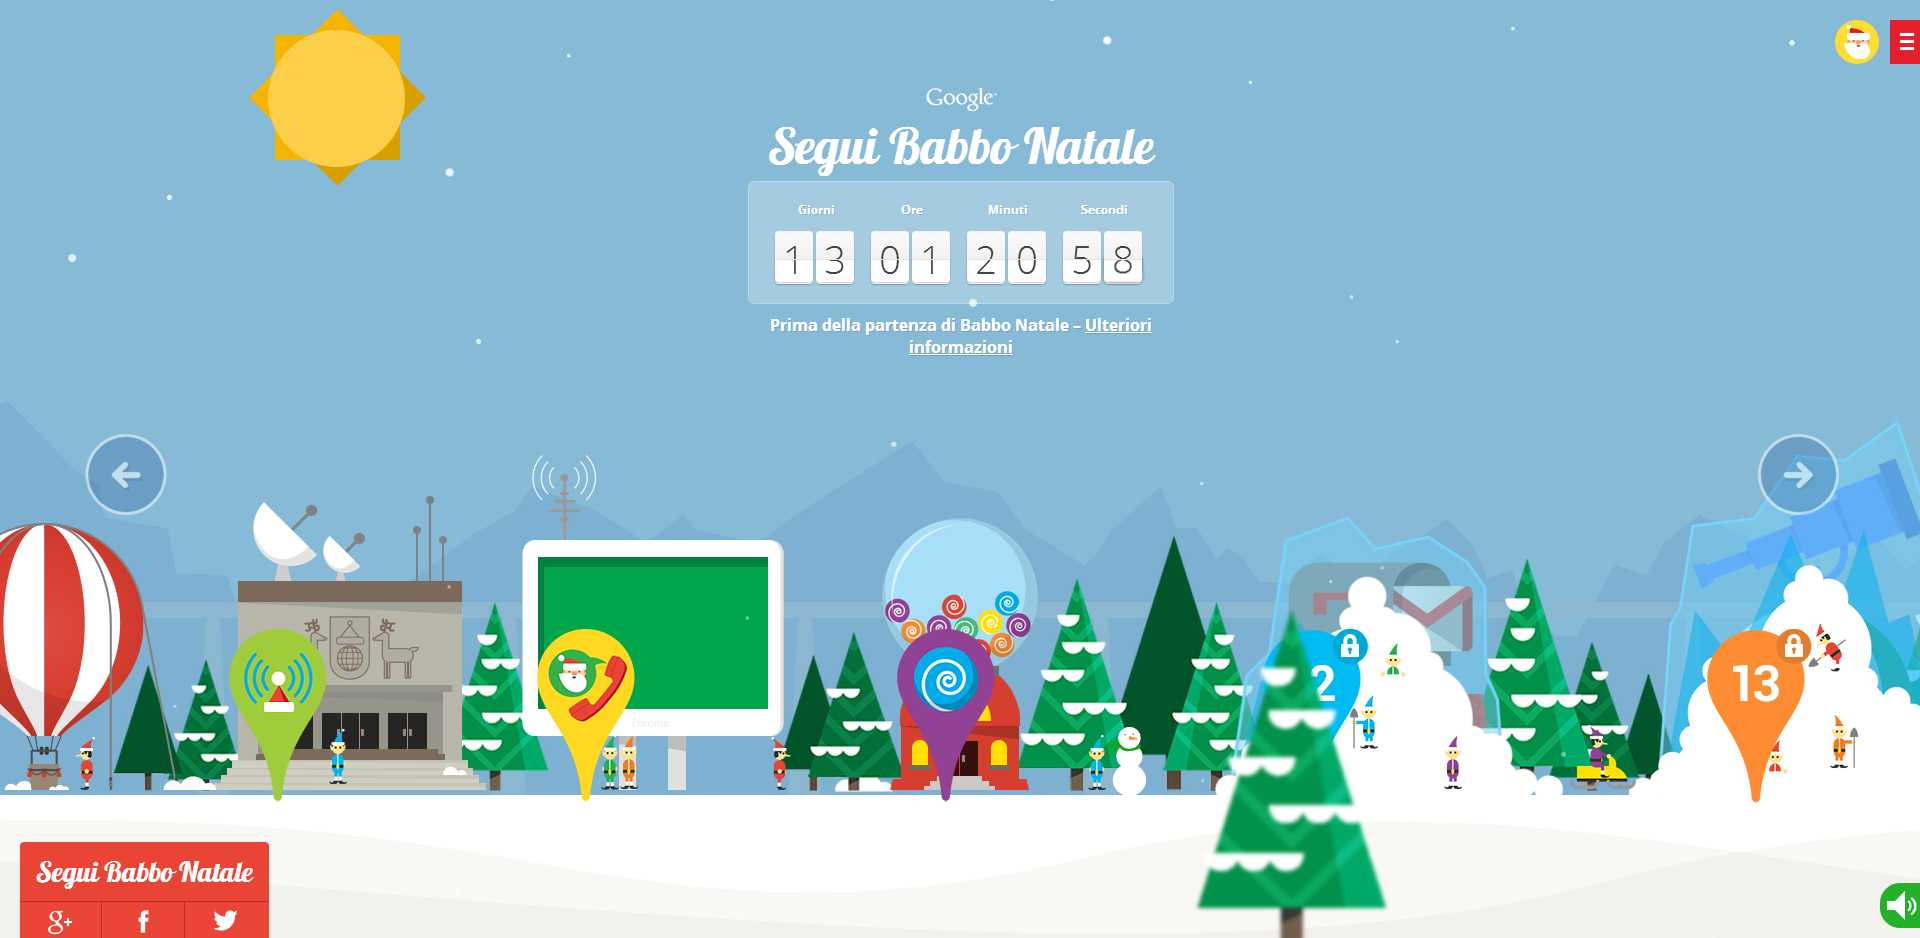 Giochi Di Babbo Natale Che Consegna I Regali.Giochi Di Babbo Natale Gratis Con Google